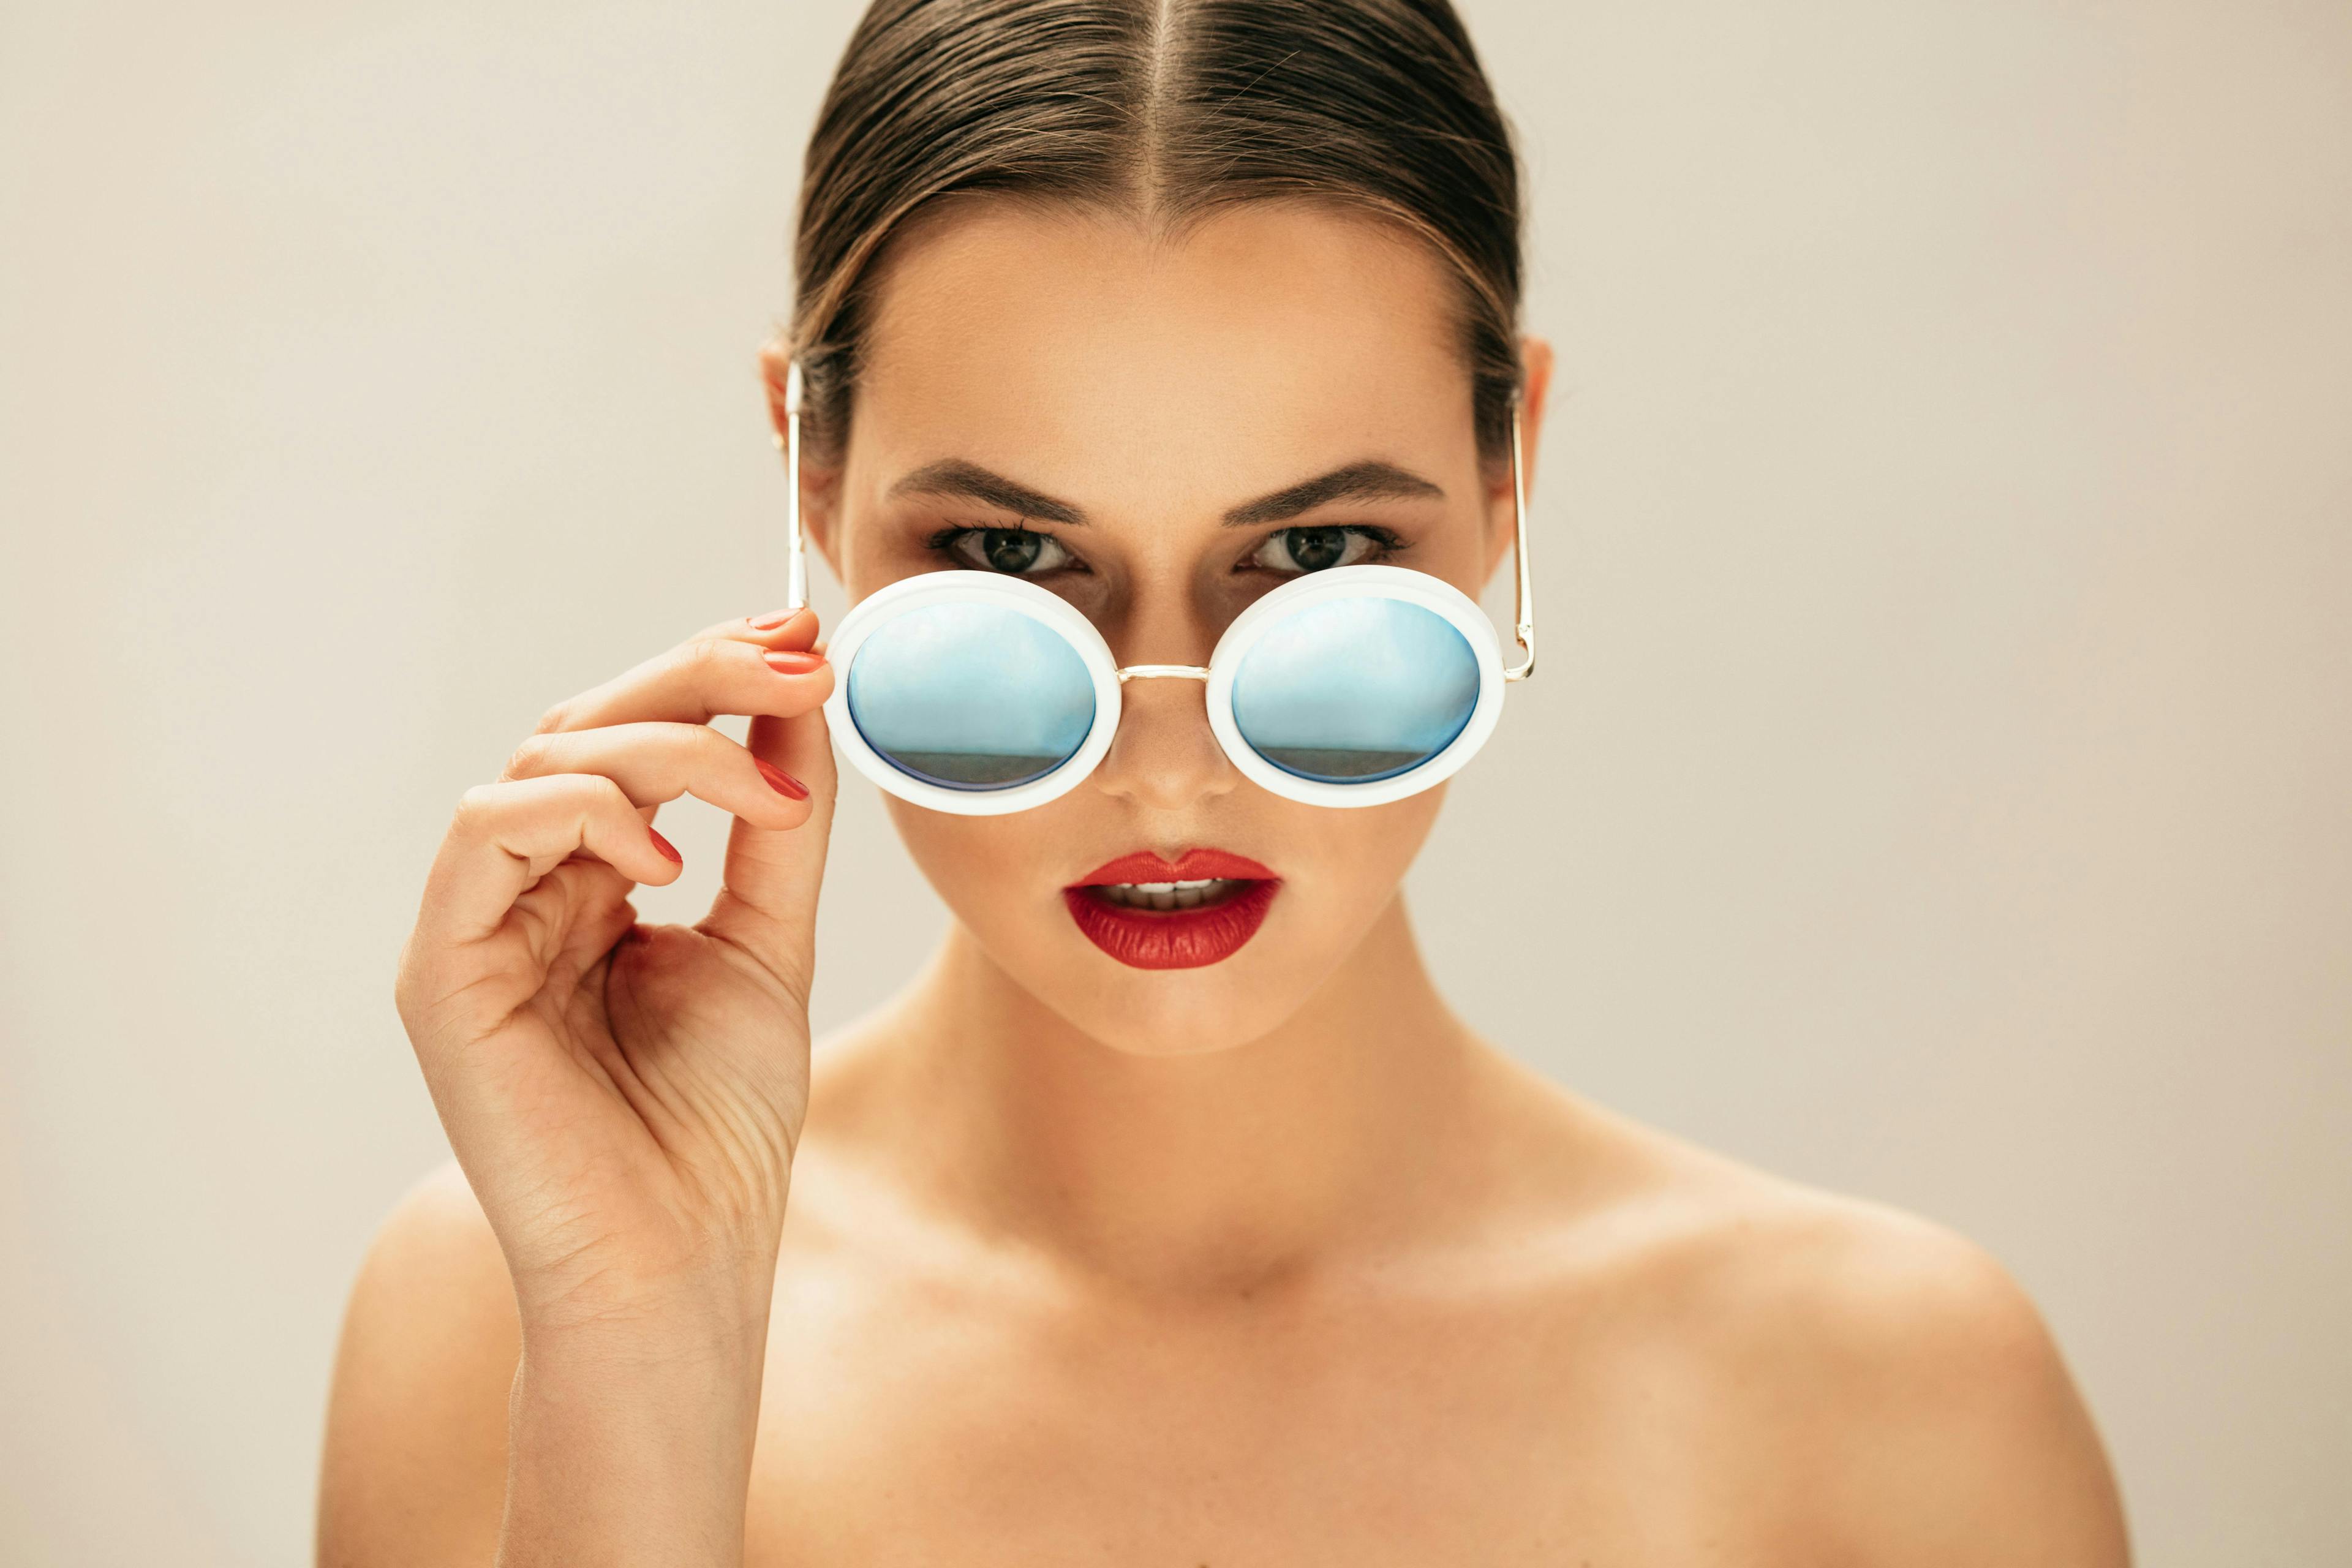 sunglasses accessories accessory face person human skin glasses female